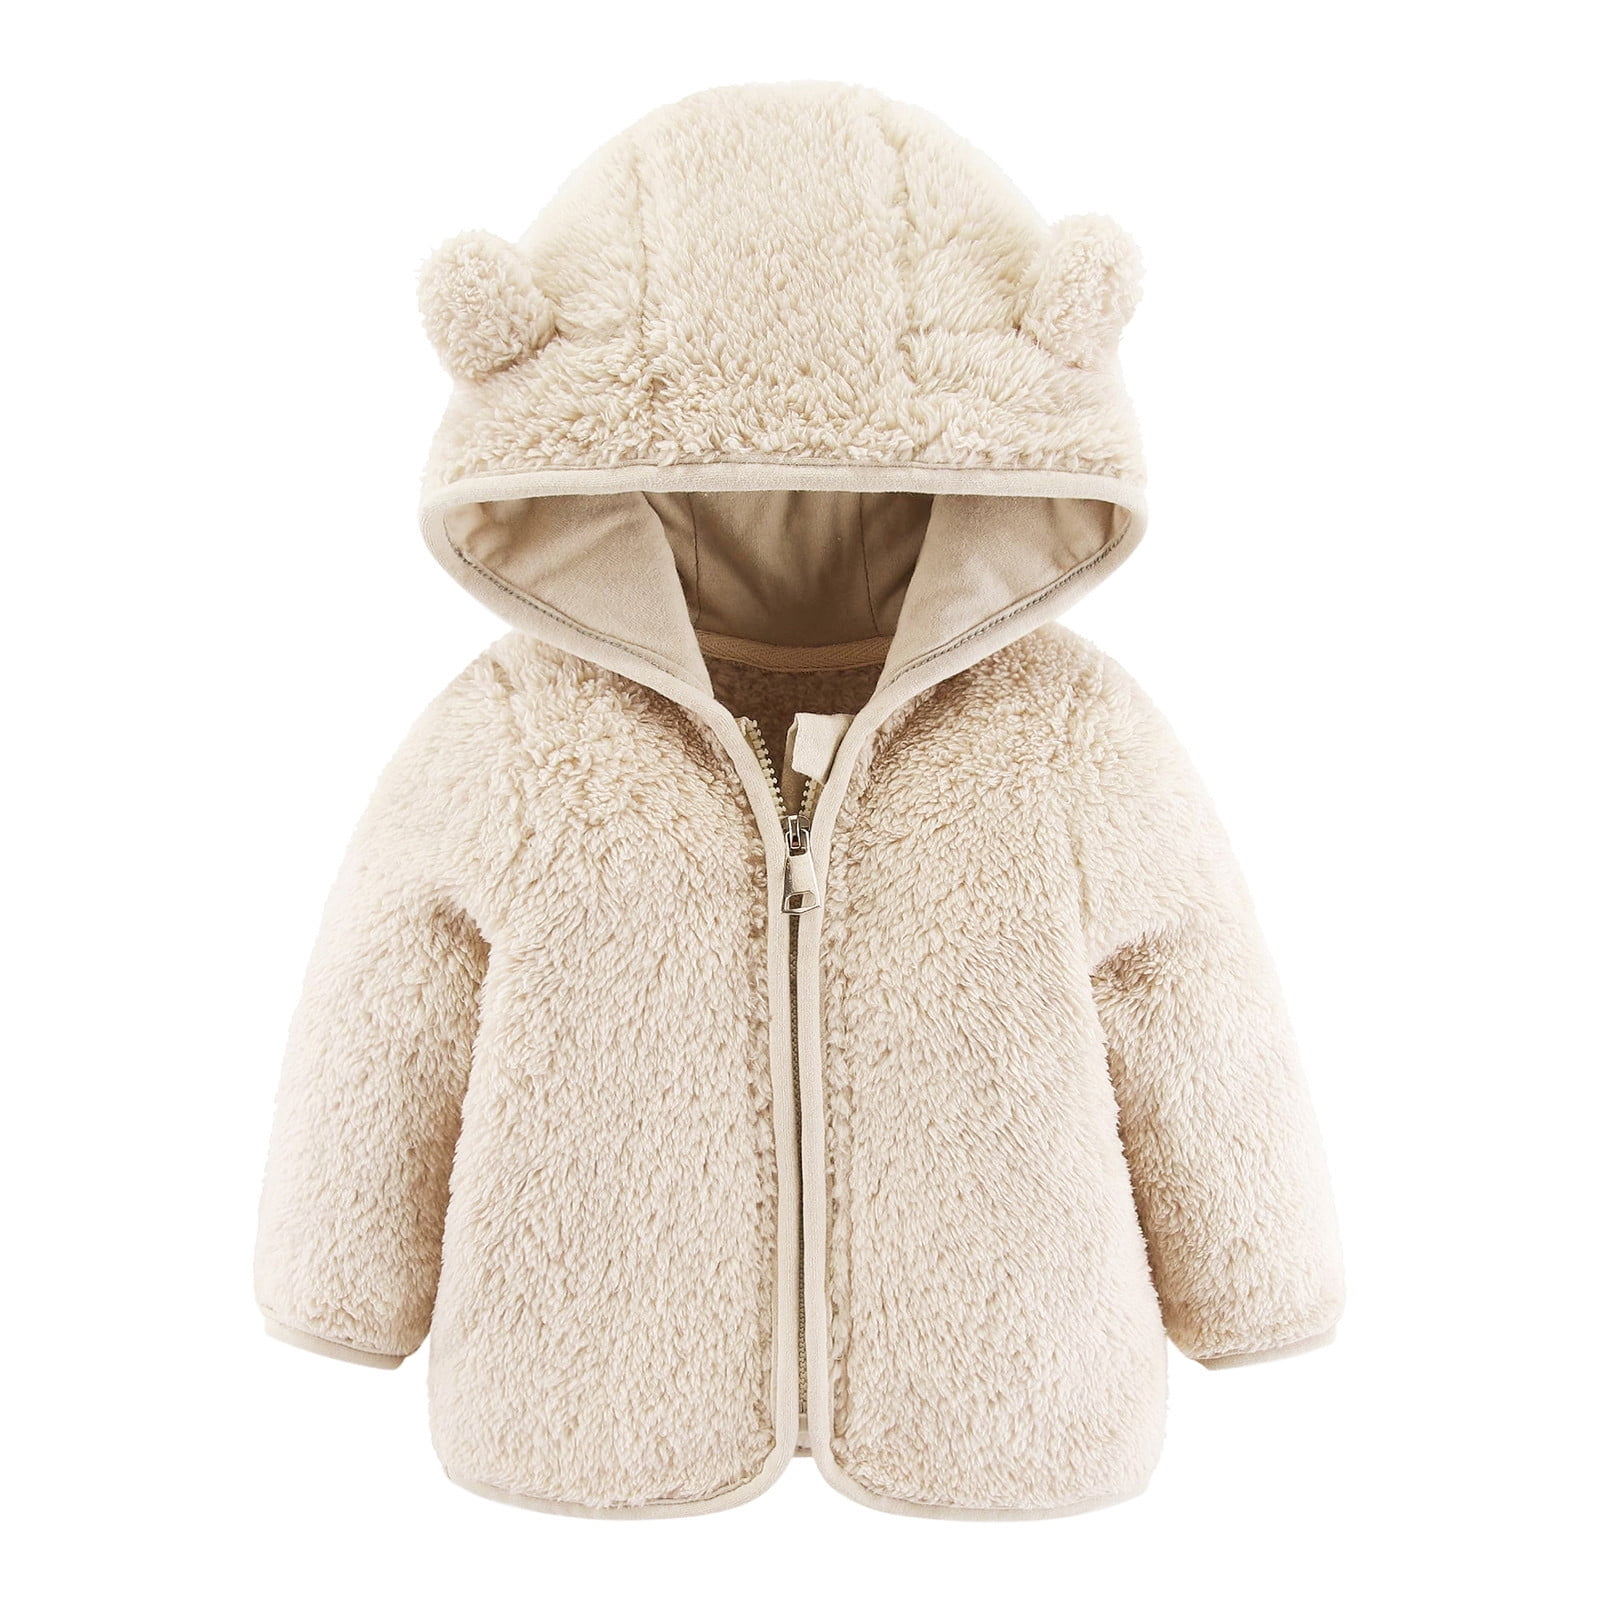 Baby Girls Boys Jacket Bear Ears Hooded Outerwear Zipper Warm Winter ...